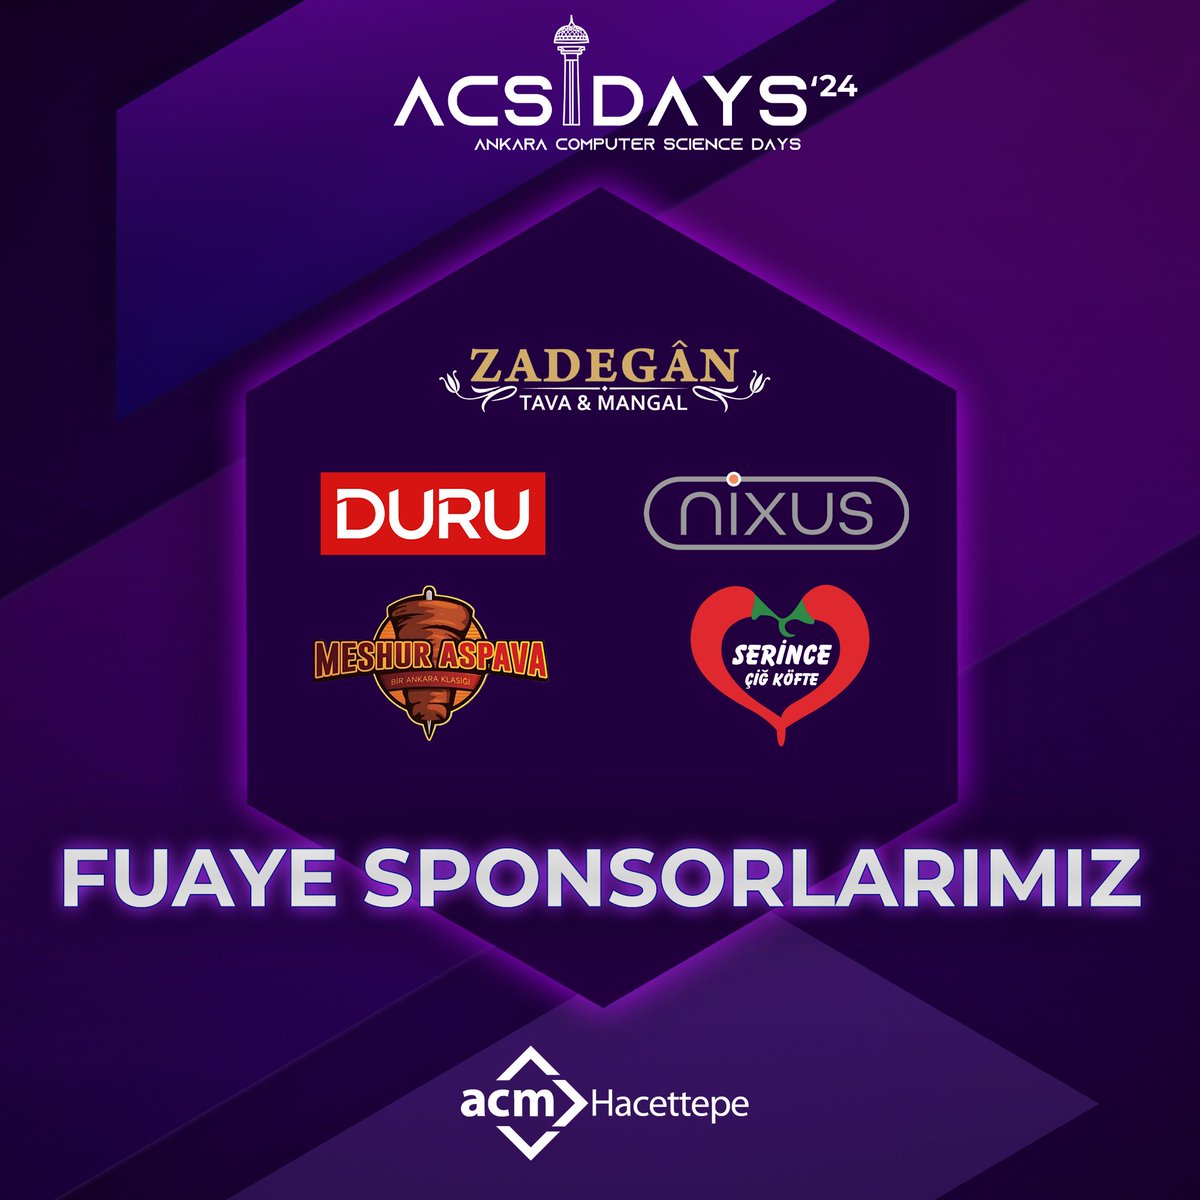 Sektörün yıldızlarının buluştuğu ACSDAYS’24 etkinliğimizin Fuaye Sponsorları!

Fuaye Sponsorumuza tüm destekleri için çok teşekkür ediyoruz! 

Hepsi ve daha fazlası için 29-30 Nisan’da davetlisiniz!